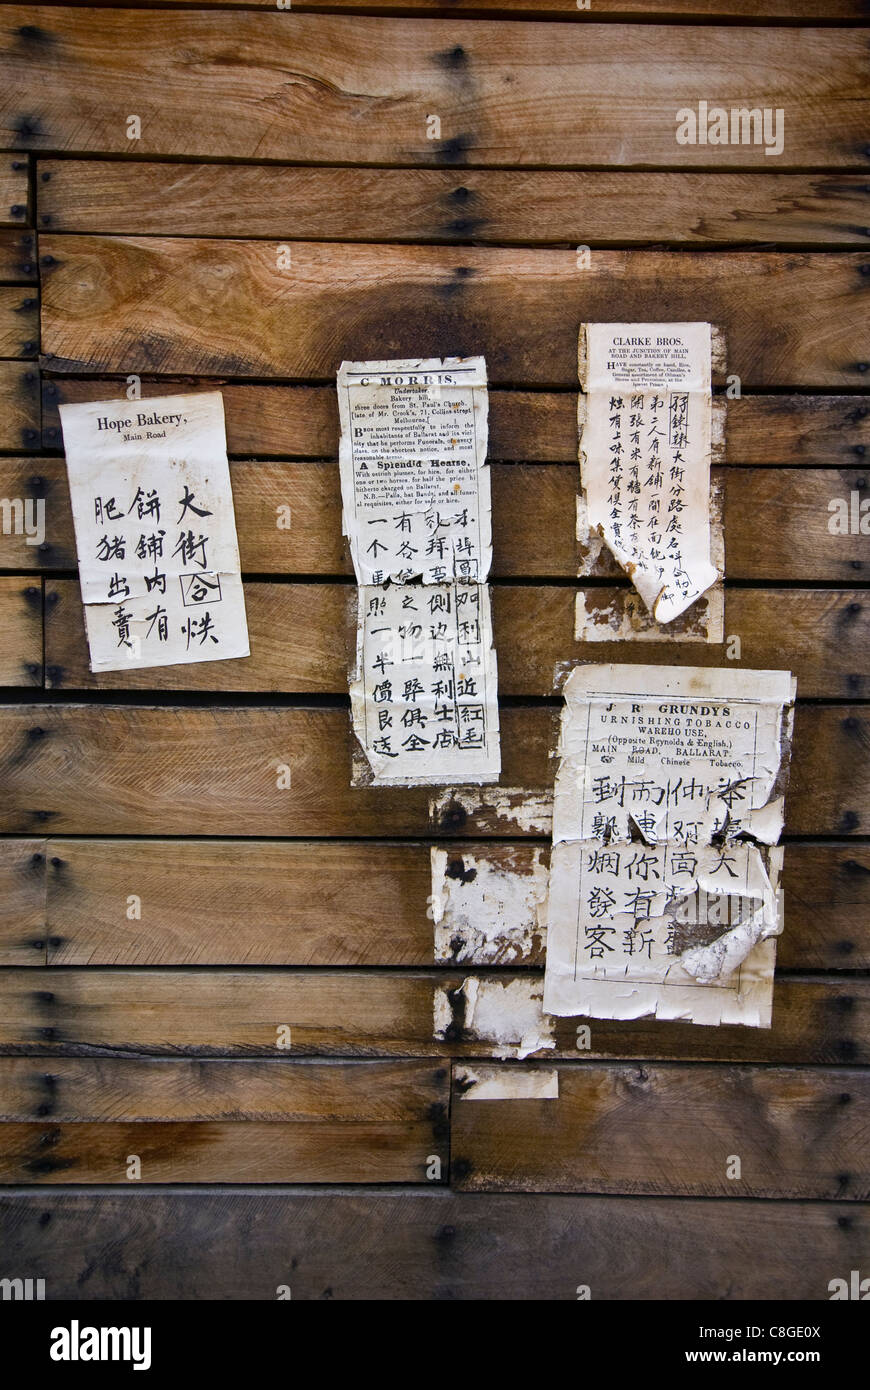 Escribir en chino los avisos públicos impresos publicados en el muro de la granja. Foto de stock